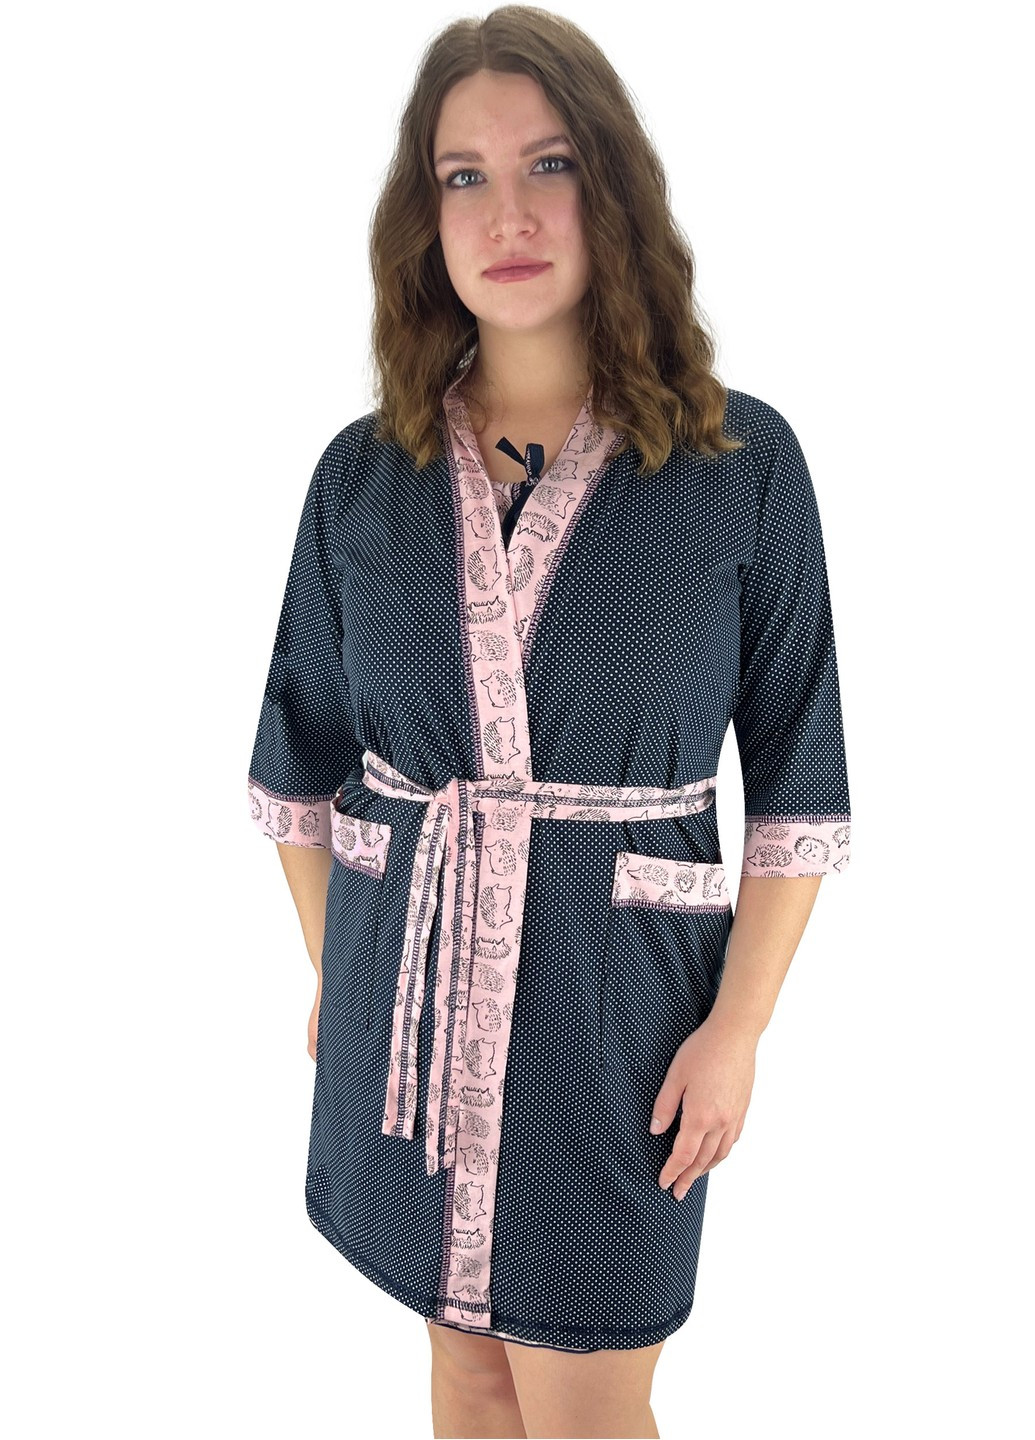 Комплект женский ажур ночная и халат ежик Жемчужина стилей 1422 (274260516)